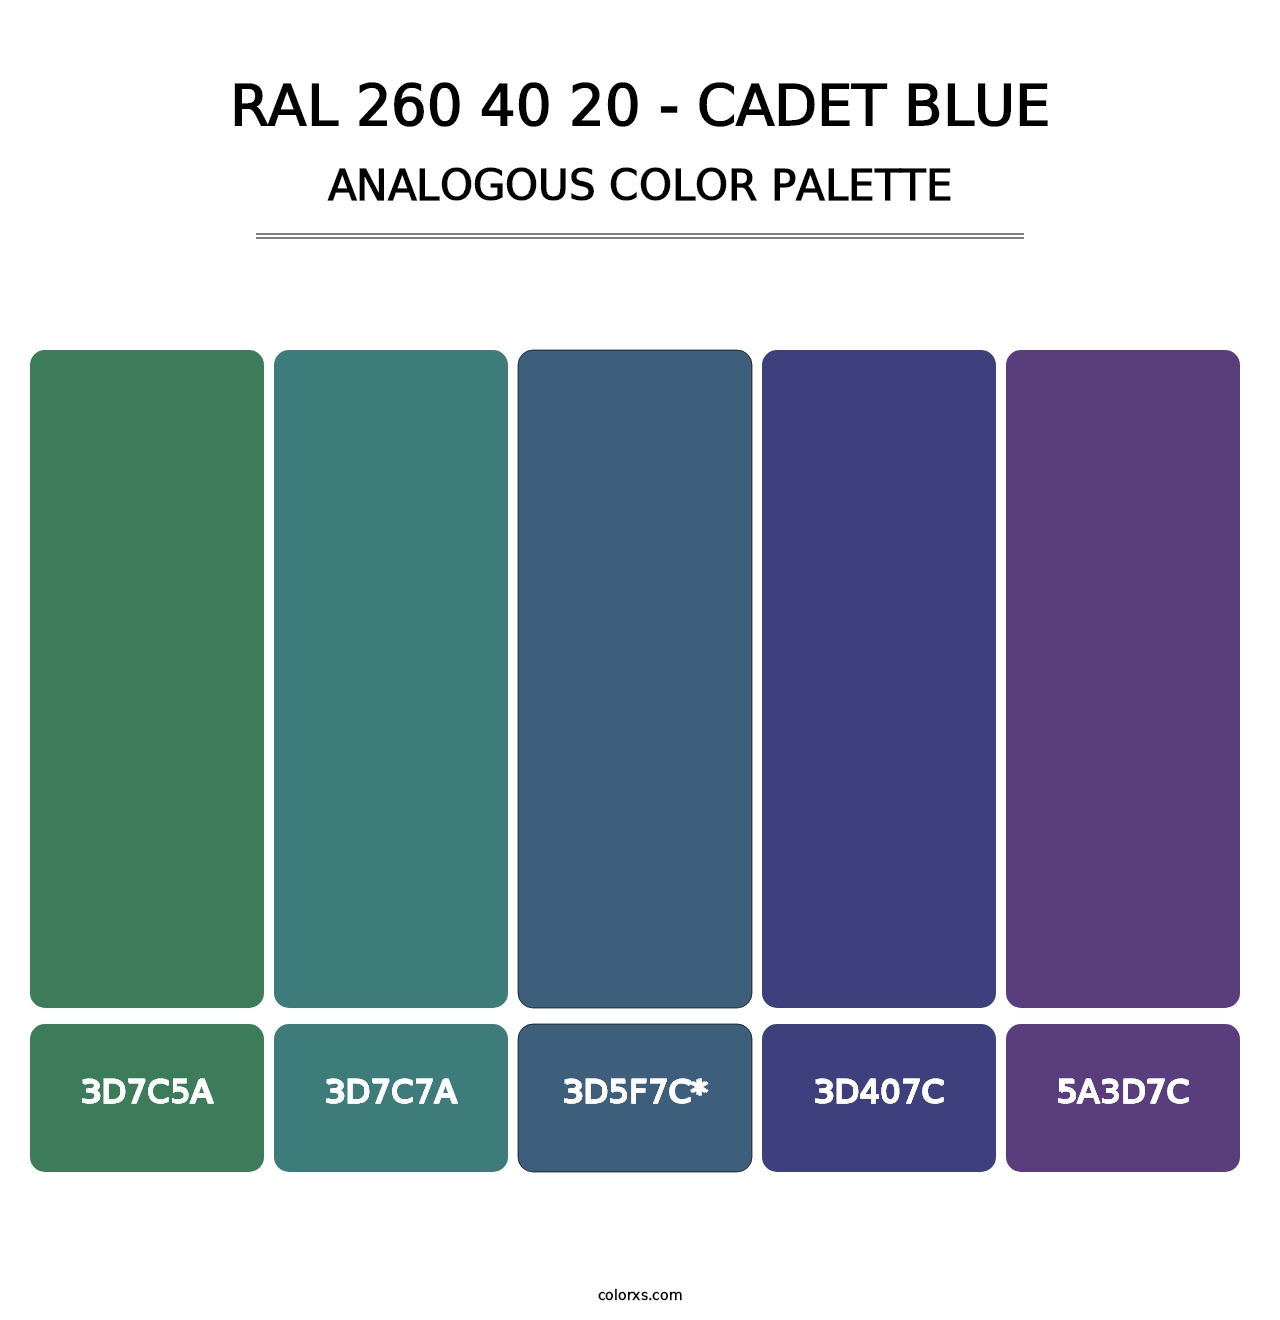 RAL 260 40 20 - Cadet Blue - Analogous Color Palette